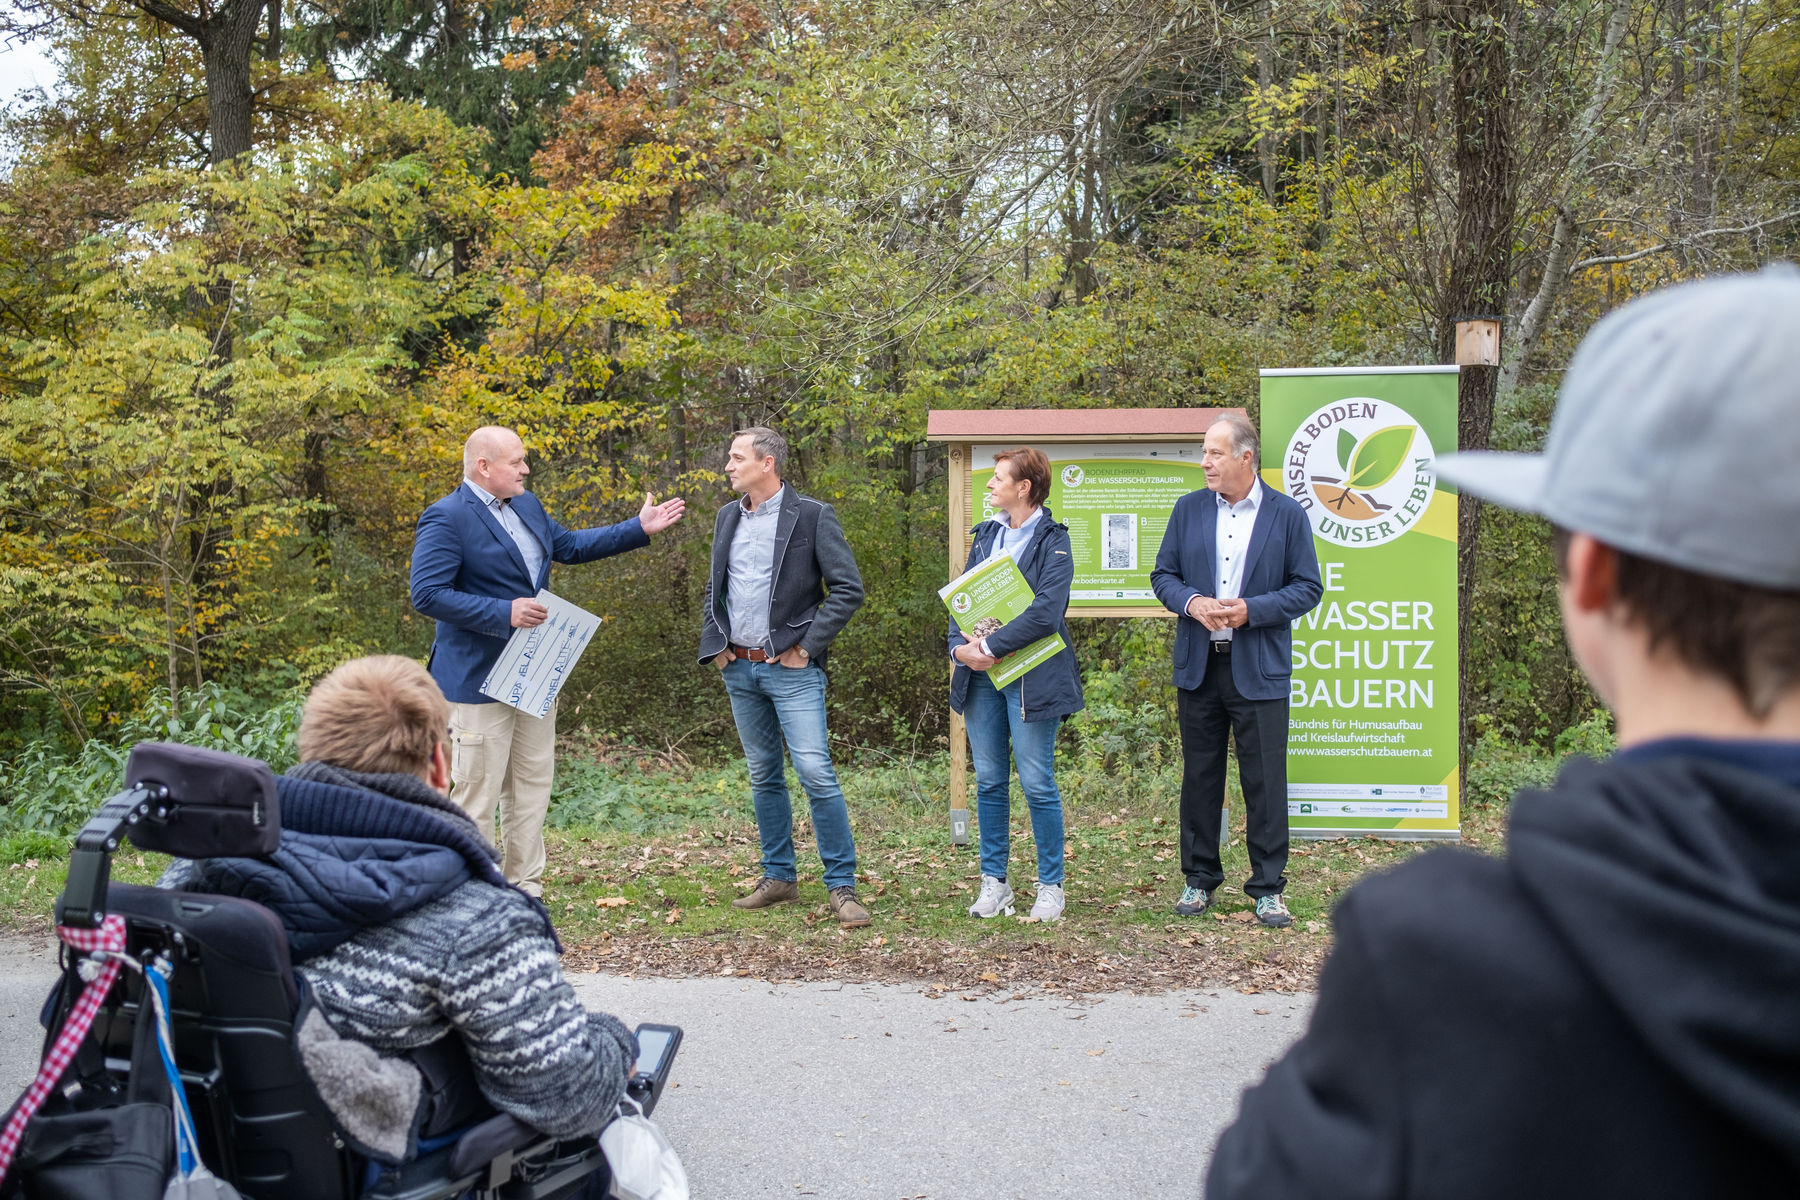 Gössendorf als erste Wasserschutzgemeinde Österreichs ausgezeichnet © LK-Stmk/Alexander Danner